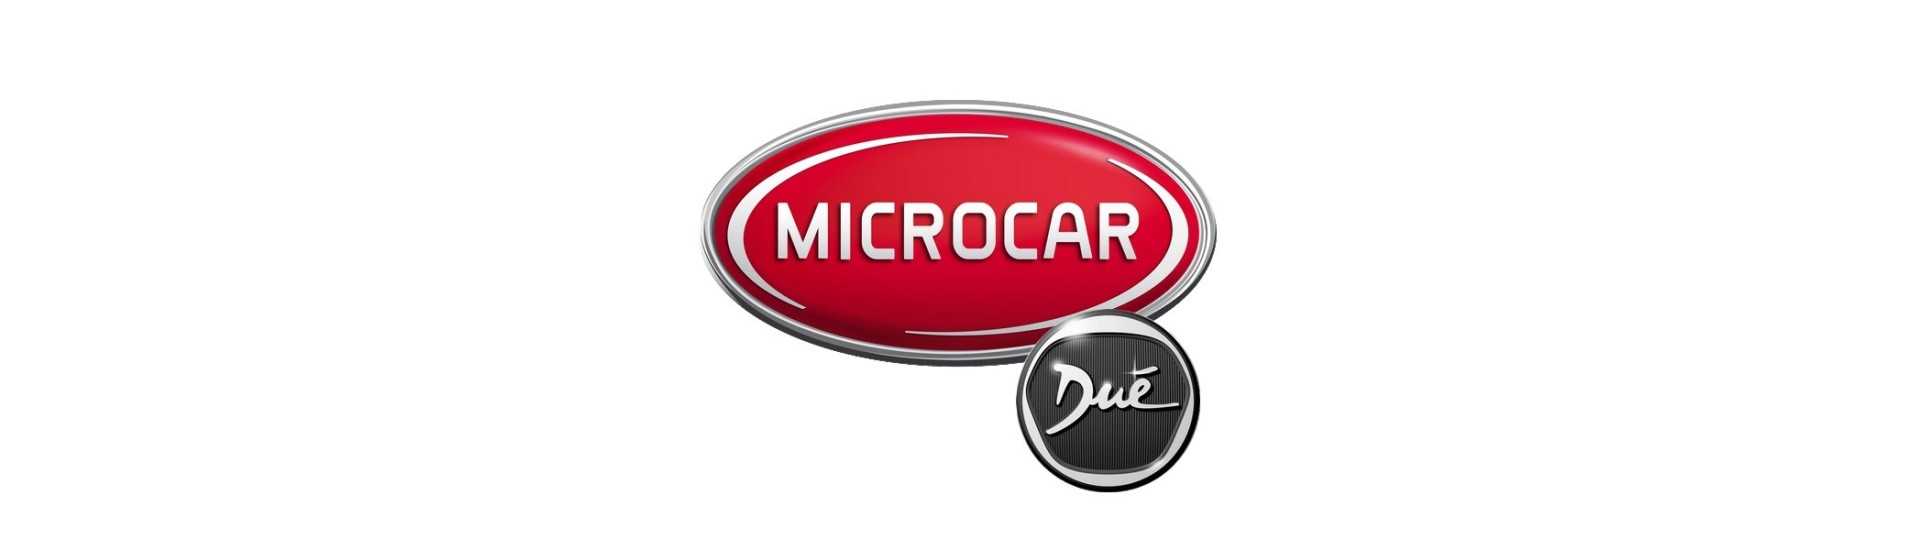 Potentiometru la cel mai bun preț pentru o mașină fără permis Microcar Dué